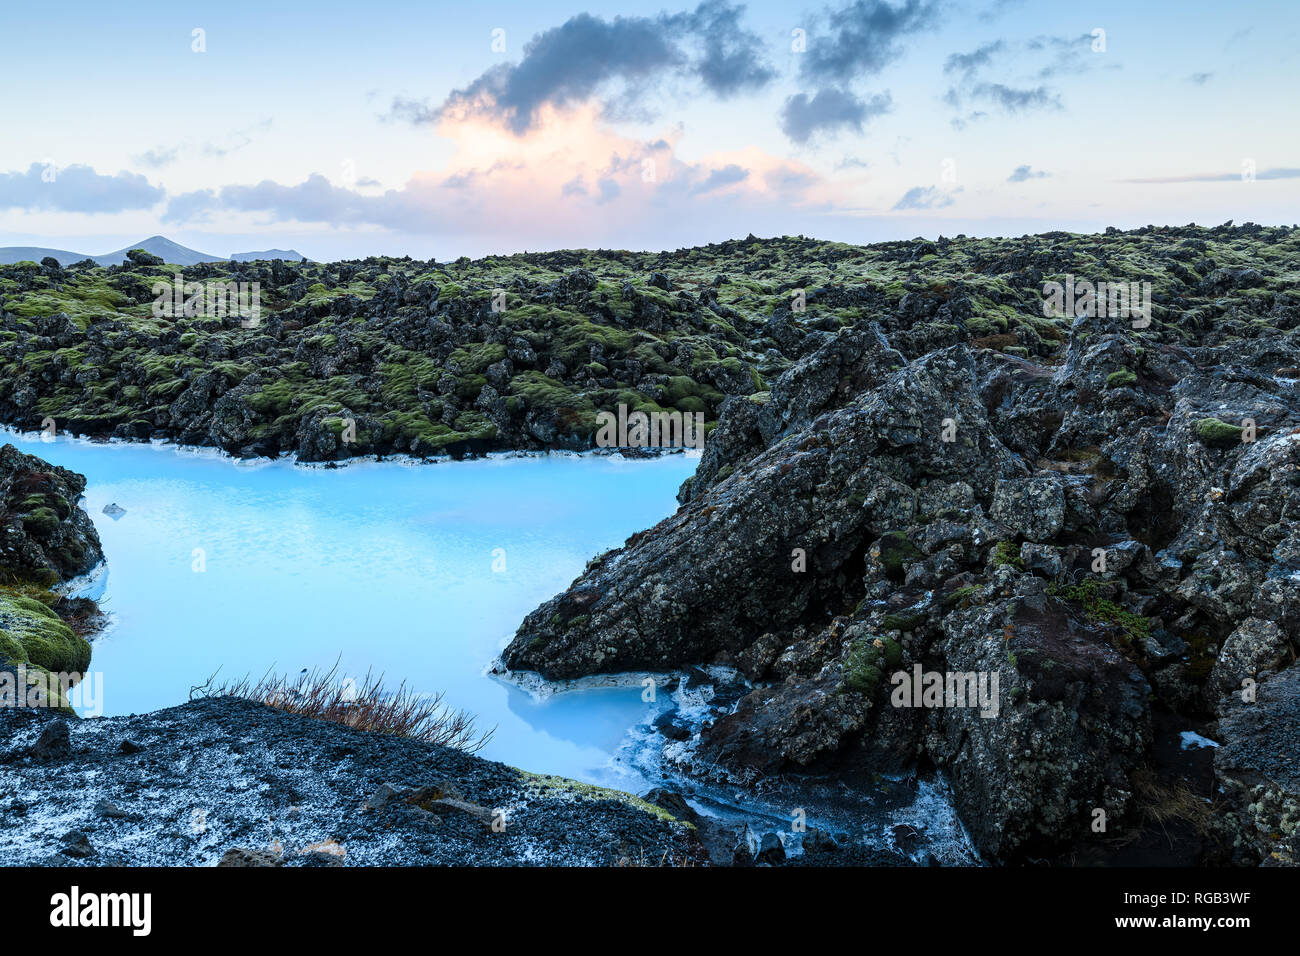 Drammatico paesaggio di un bellissimo terreno vulcanico con nere rocce vulcaniche e acqua turchese a laguna blu nei pressi di Grindavik nella penisola di Reykjanes Foto Stock